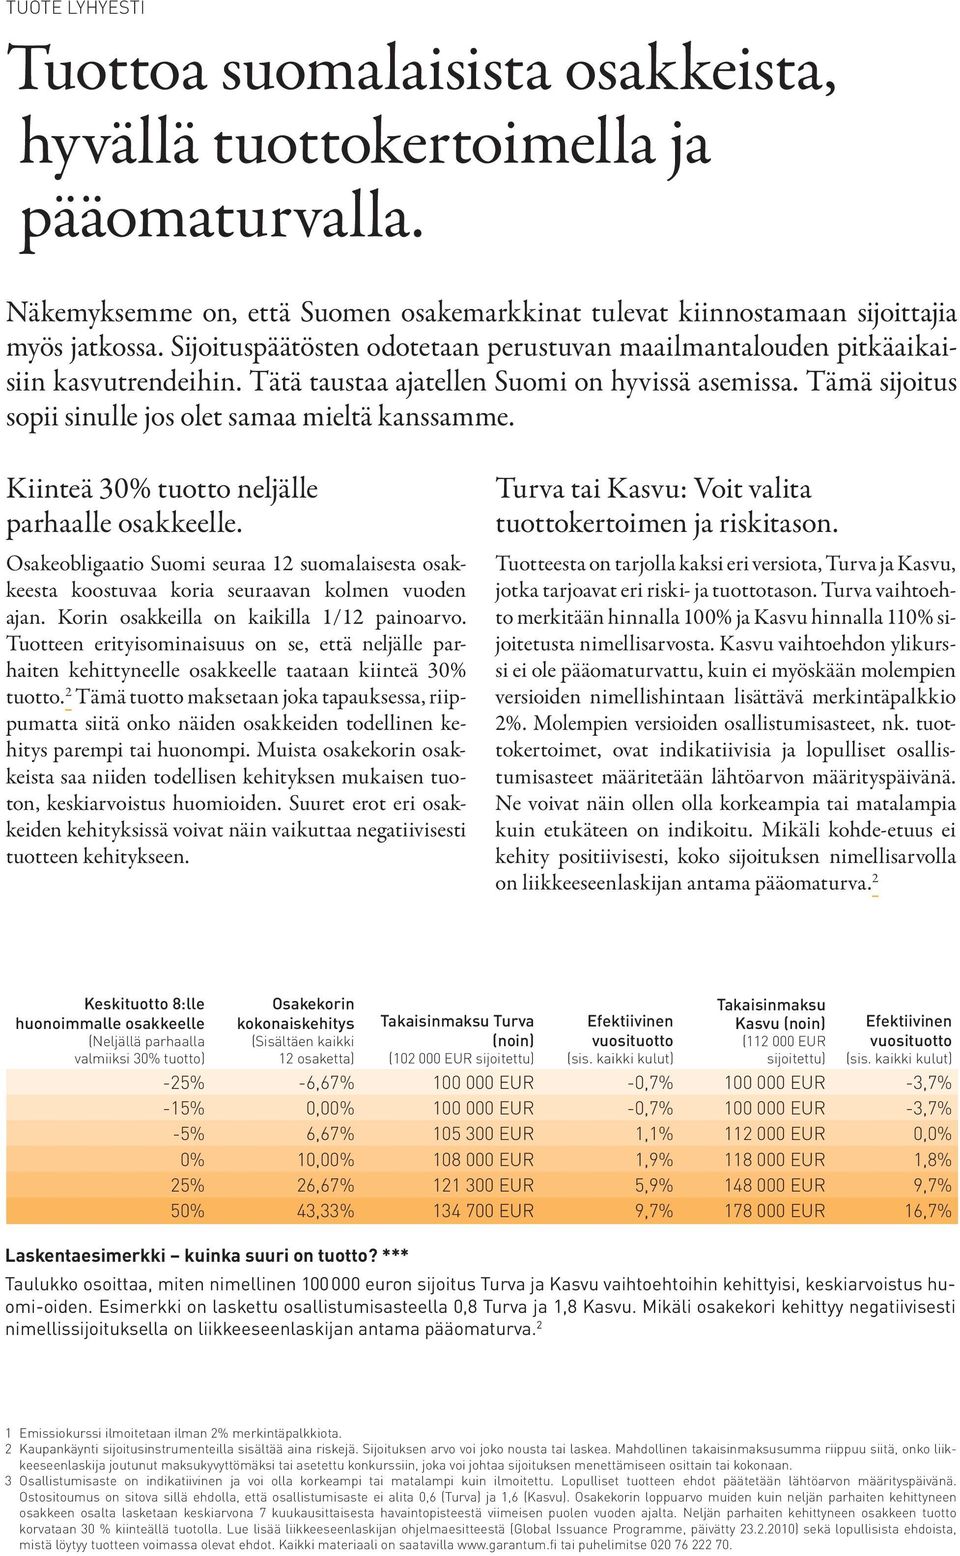 Kiinteä 30% tuotto neljälle parhaalle osakkeelle. Osakeobligaatio Suomi seuraa 12 suomalaisesta osakkeesta koostuvaa koria seuraavan kolmen vuoden ajan. Korin osakkeilla on kaikilla 1/12 painoarvo.